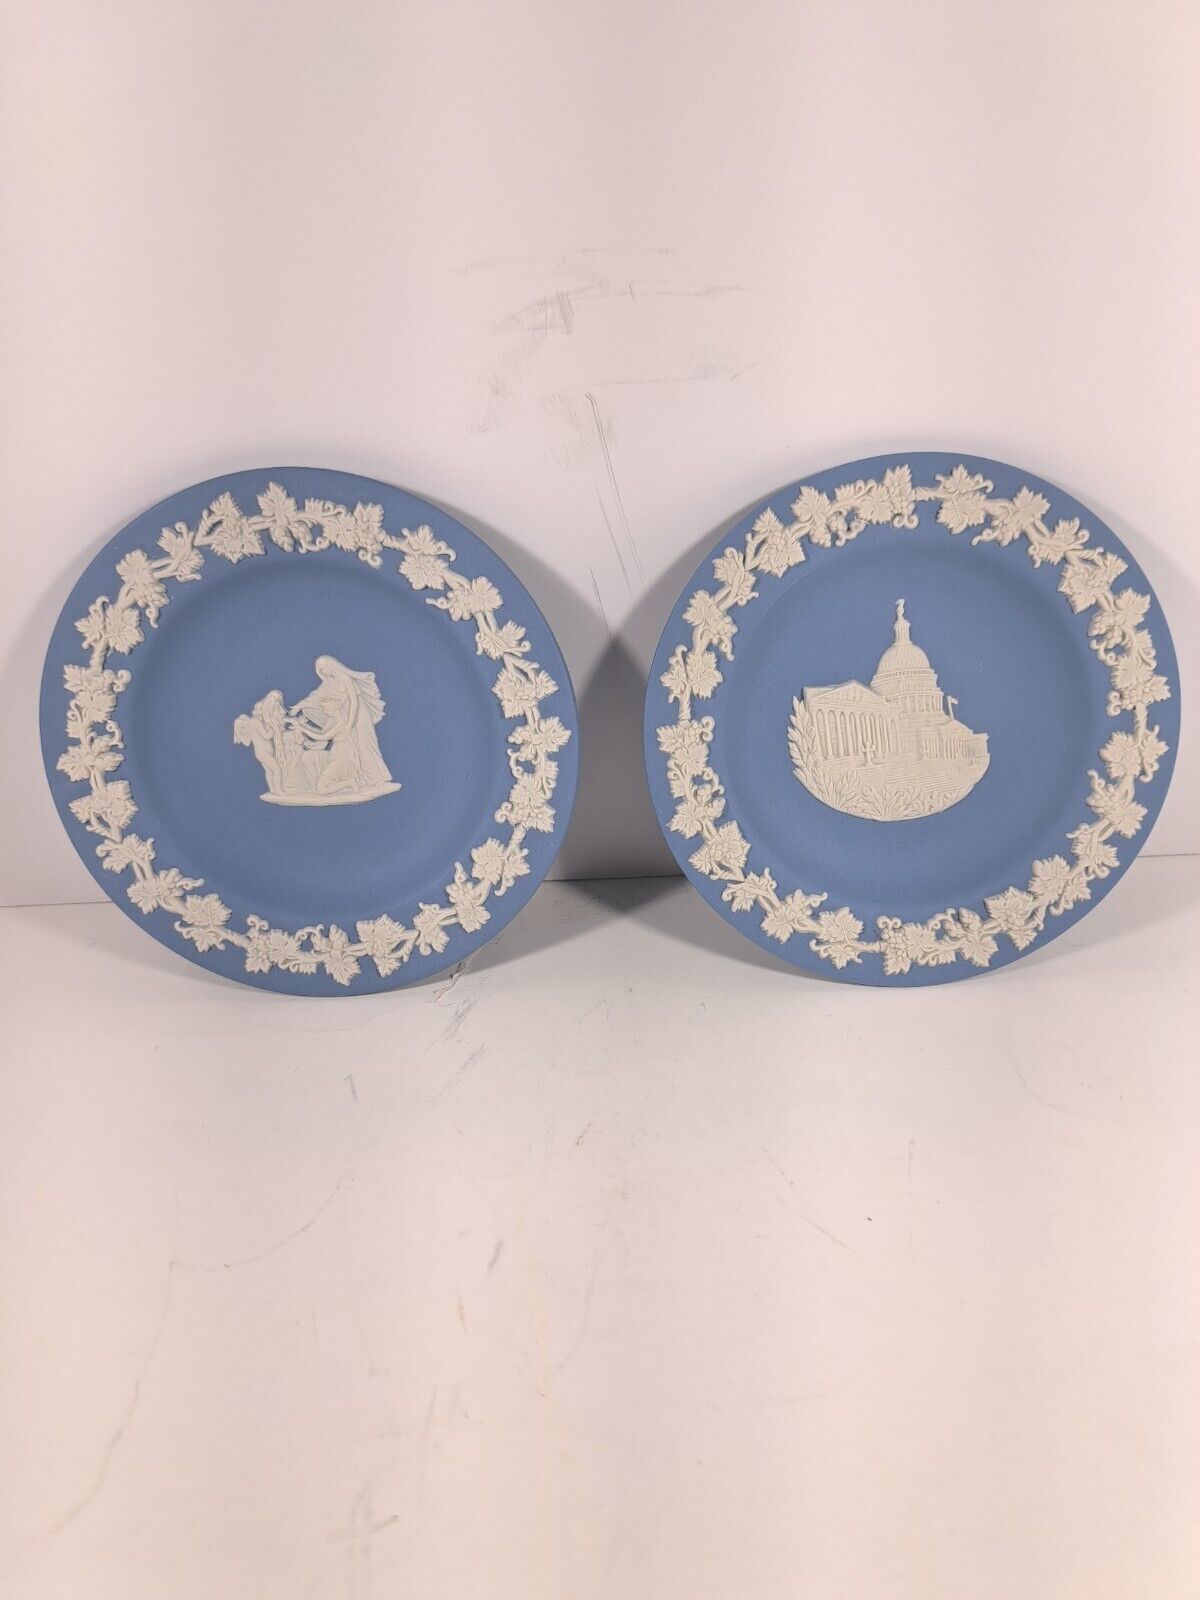 Vintage Wedgwood Blue Jasperware round trinket plate -set of 2. Approx 4 1/4 in